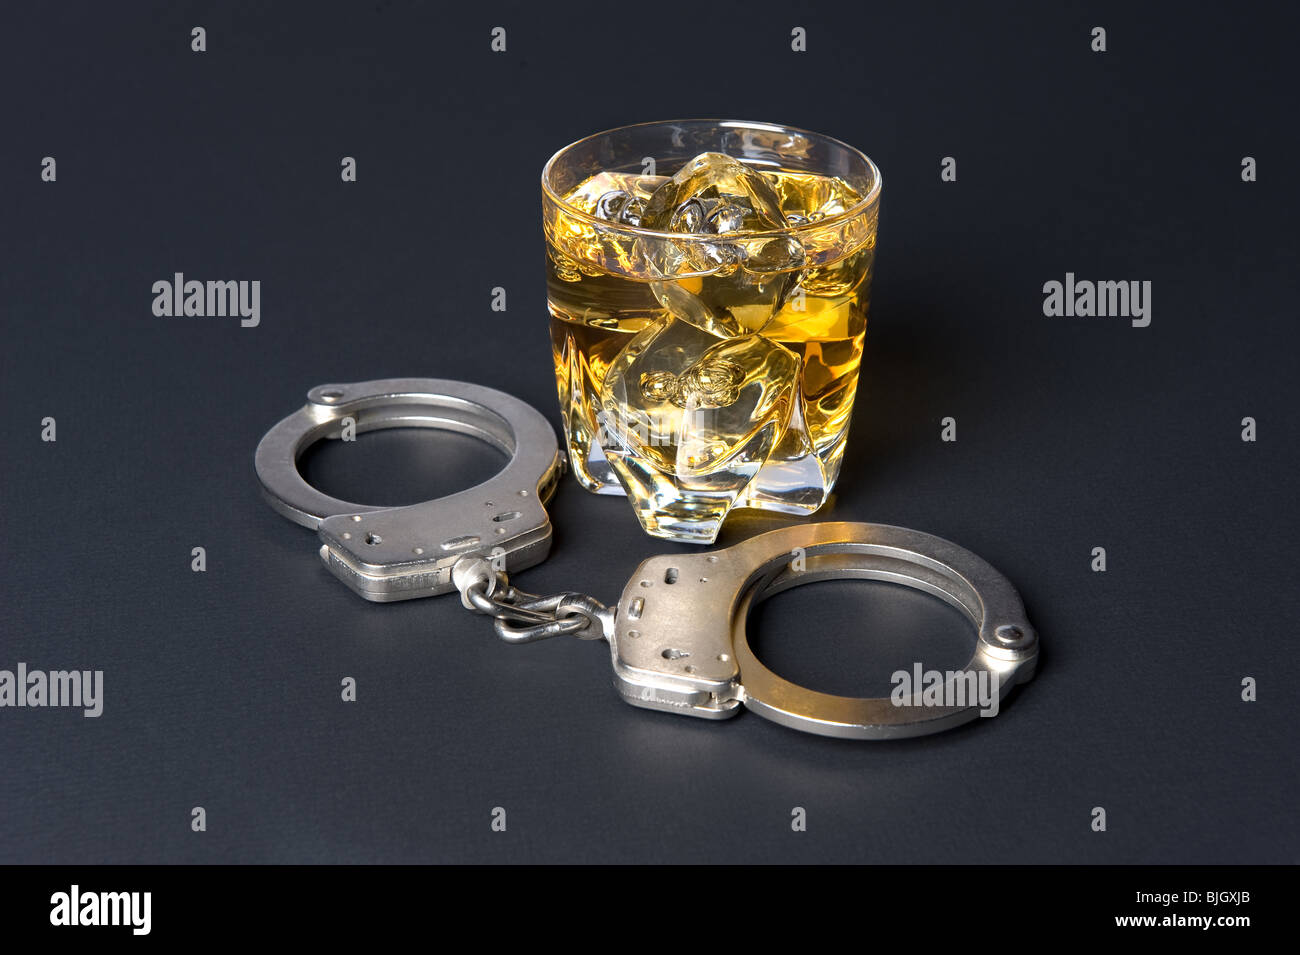 Una coppia di manette accanto a un bicchiere di whiskey deduce che bere e guidare è illegale. Foto Stock